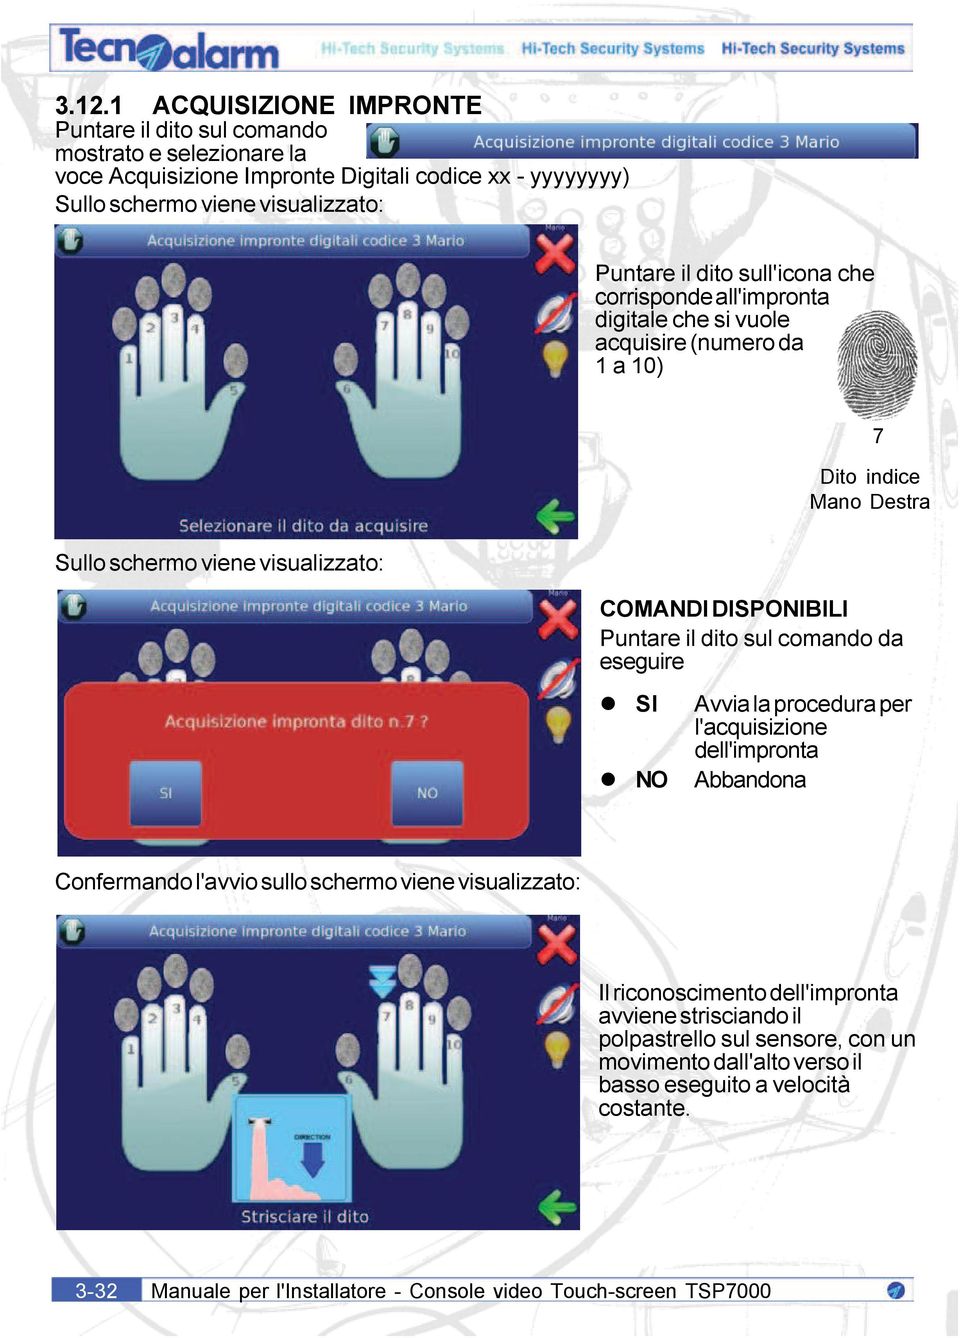 Avvia la procedura per l'acquisizione dell'impronta NO Abbandona Confermando l'avvio sullo schermo viene visualizzato: Il riconoscimento dell'impronta avviene